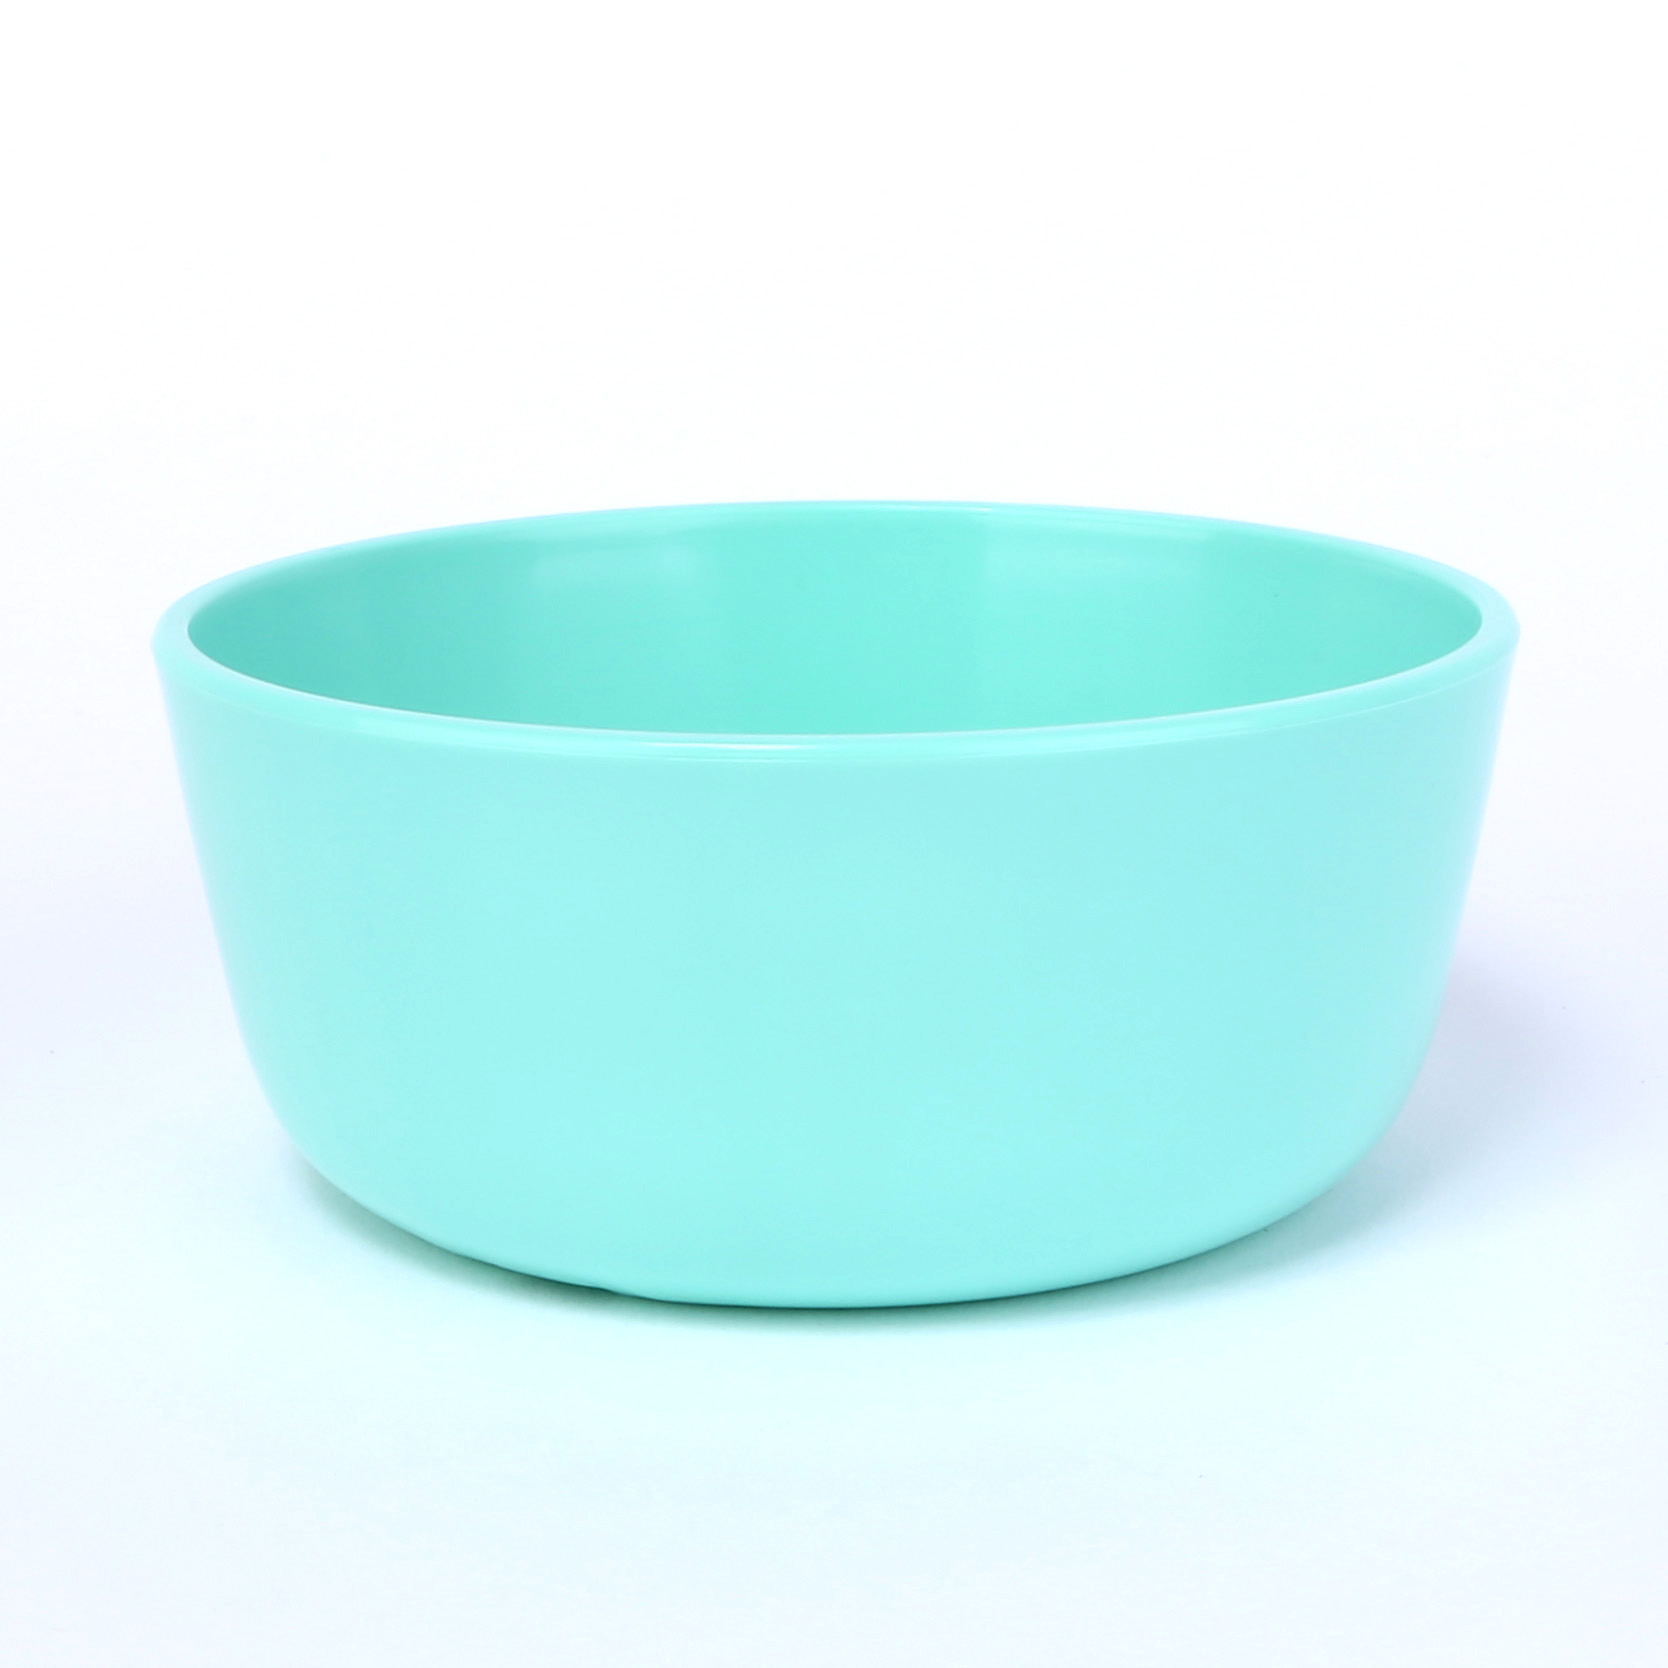 vaLon Zephyr hohe Dessertschale 11 cm aus schadstofffreiem Kunststoff in der Farbe pastellgrün.